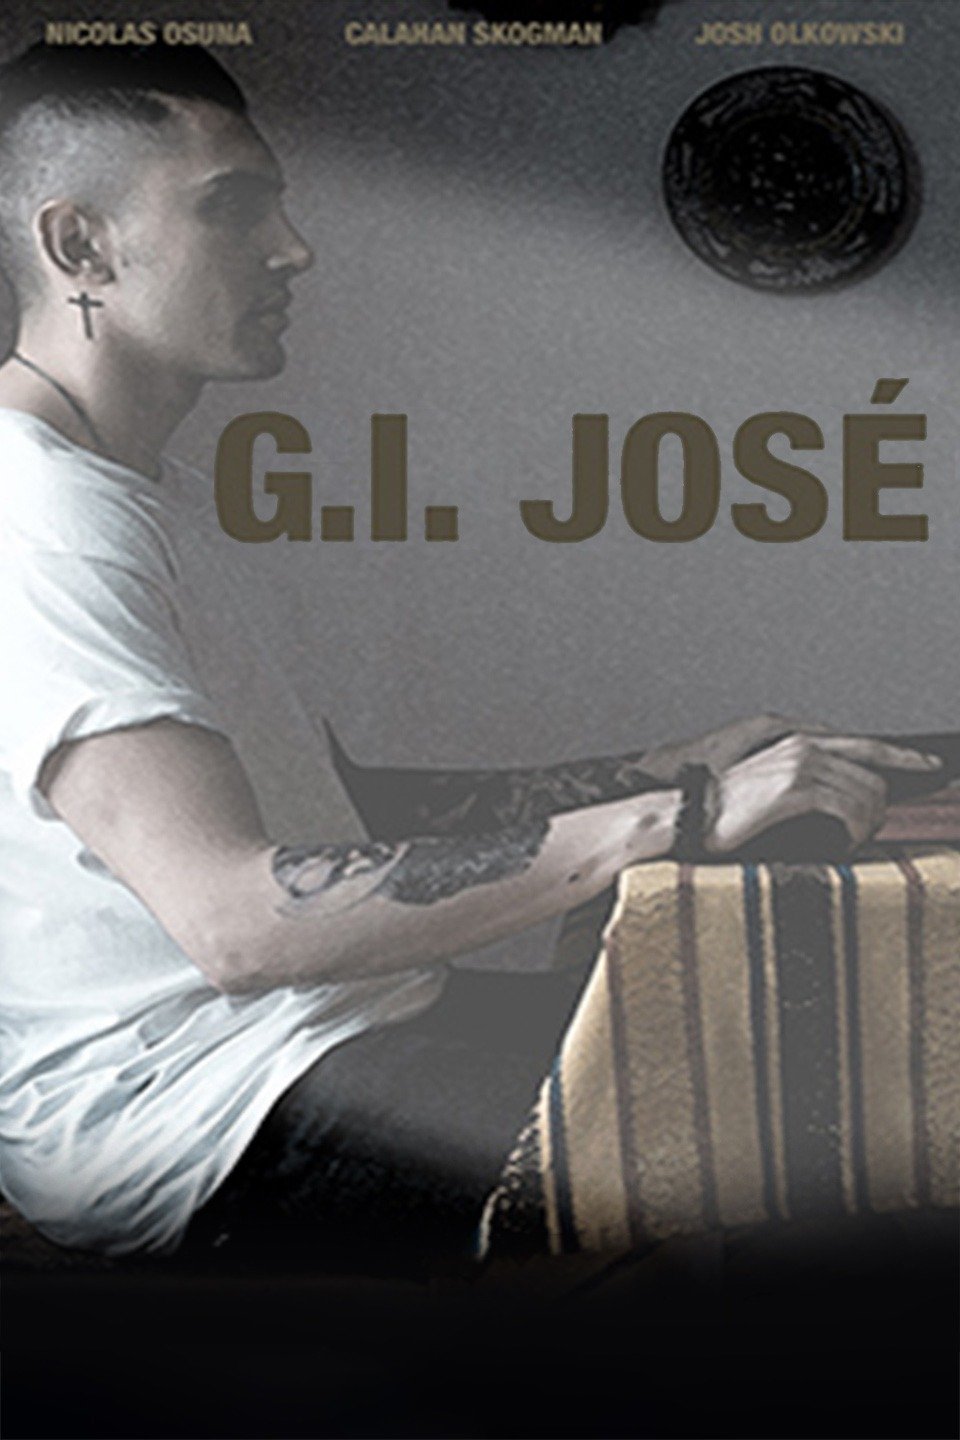 G.I. Jose